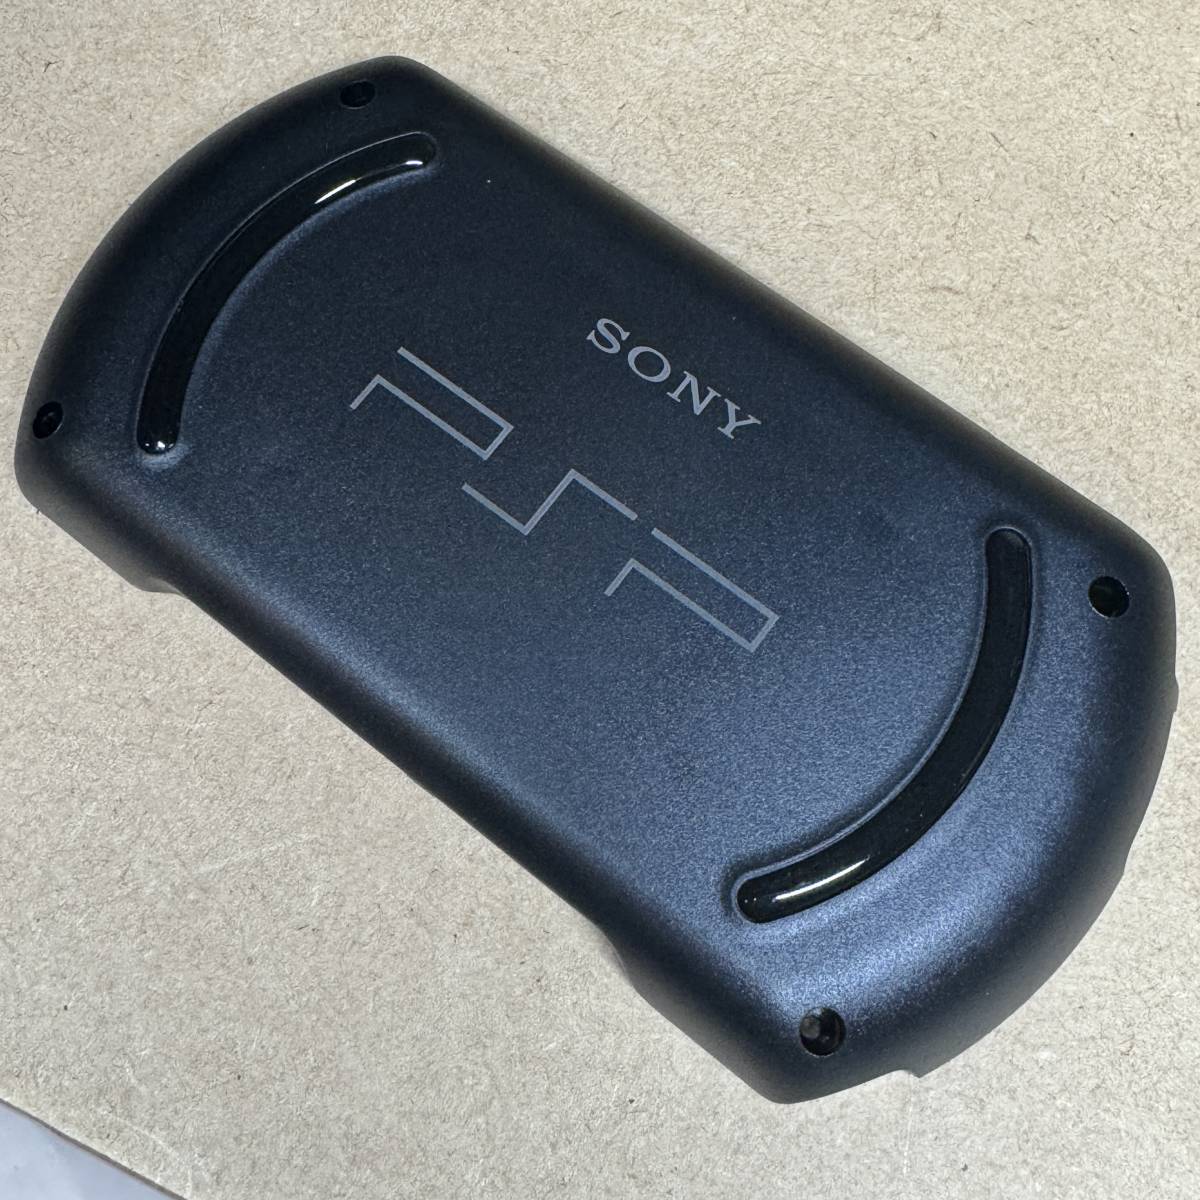 PSP GO VITA для батарея большой емкости - установка задний покрытие & пенал для батареи PS VITA чёрный новый товар не использовался товар 